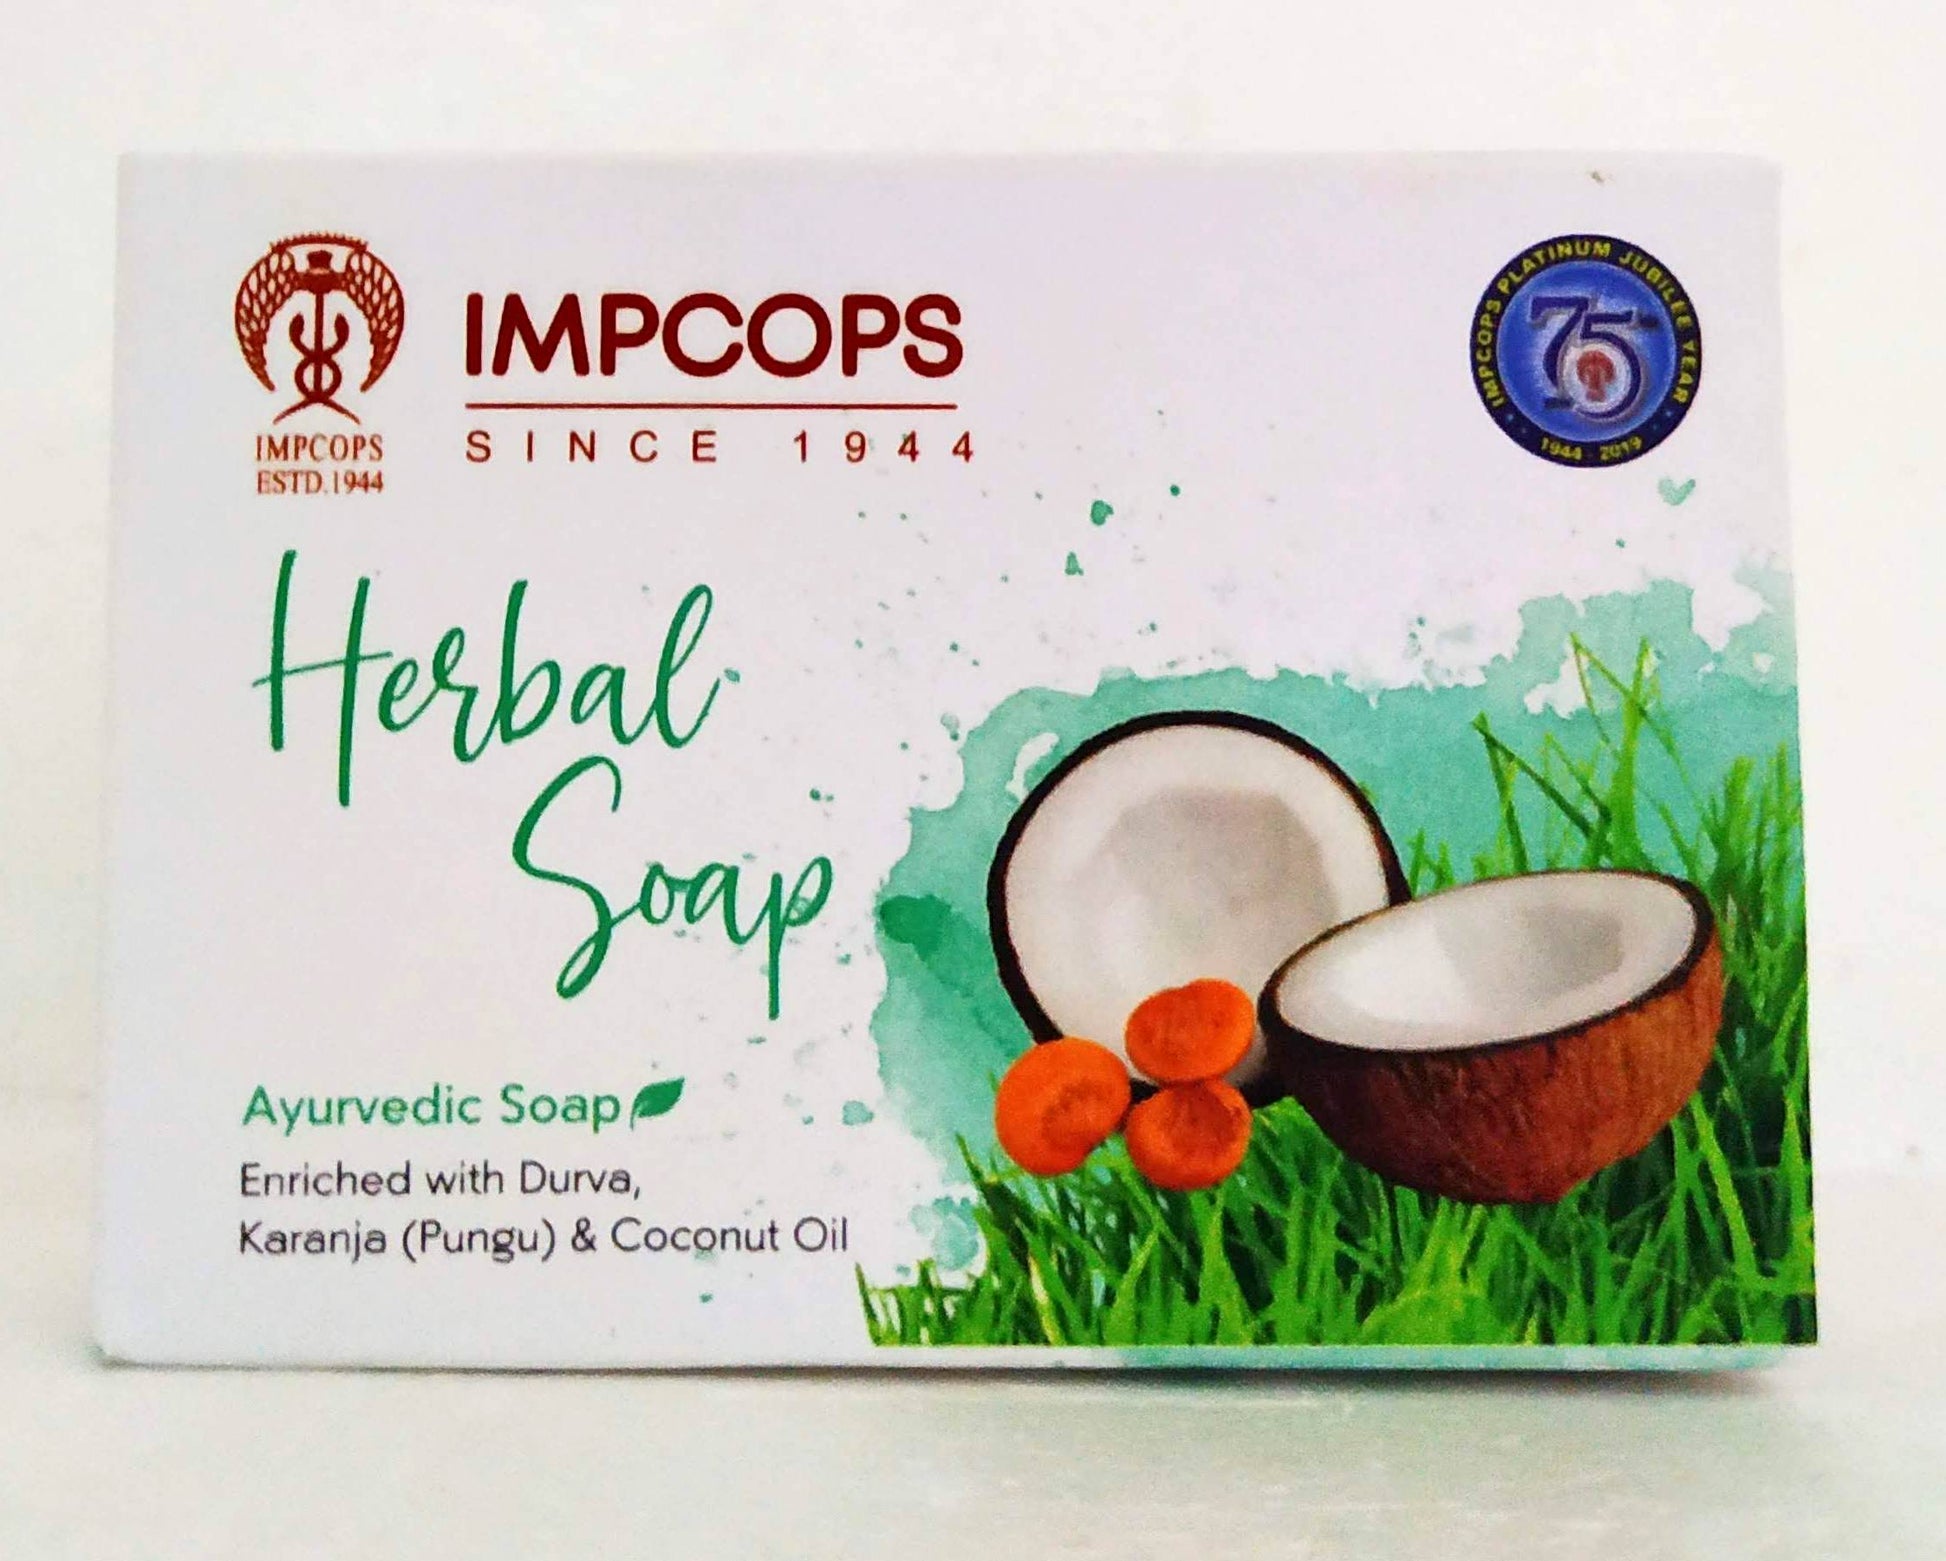 Impcops herbal soap 100gm -  Impcops - Medizzo.com